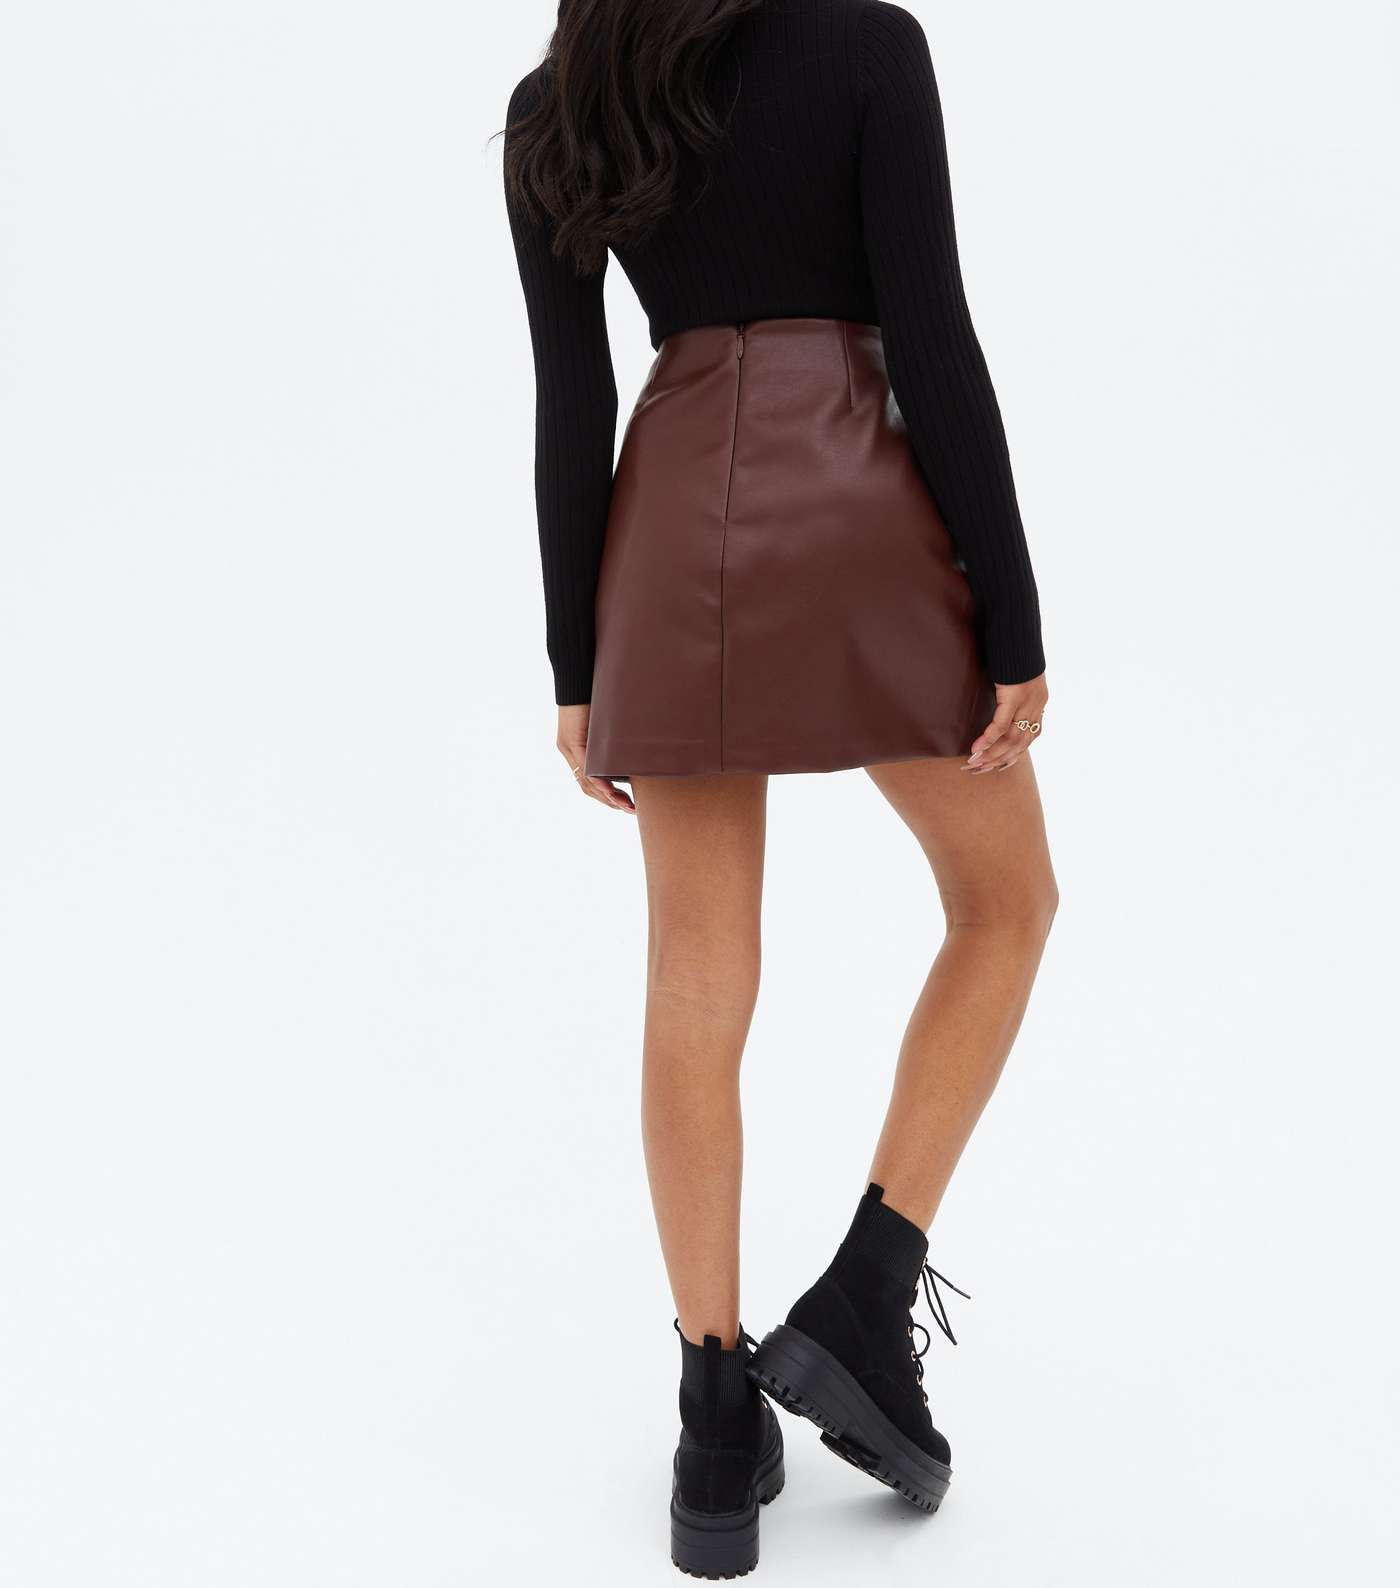 Petite Burgundy Leather-Look Mini Skirt Image 4